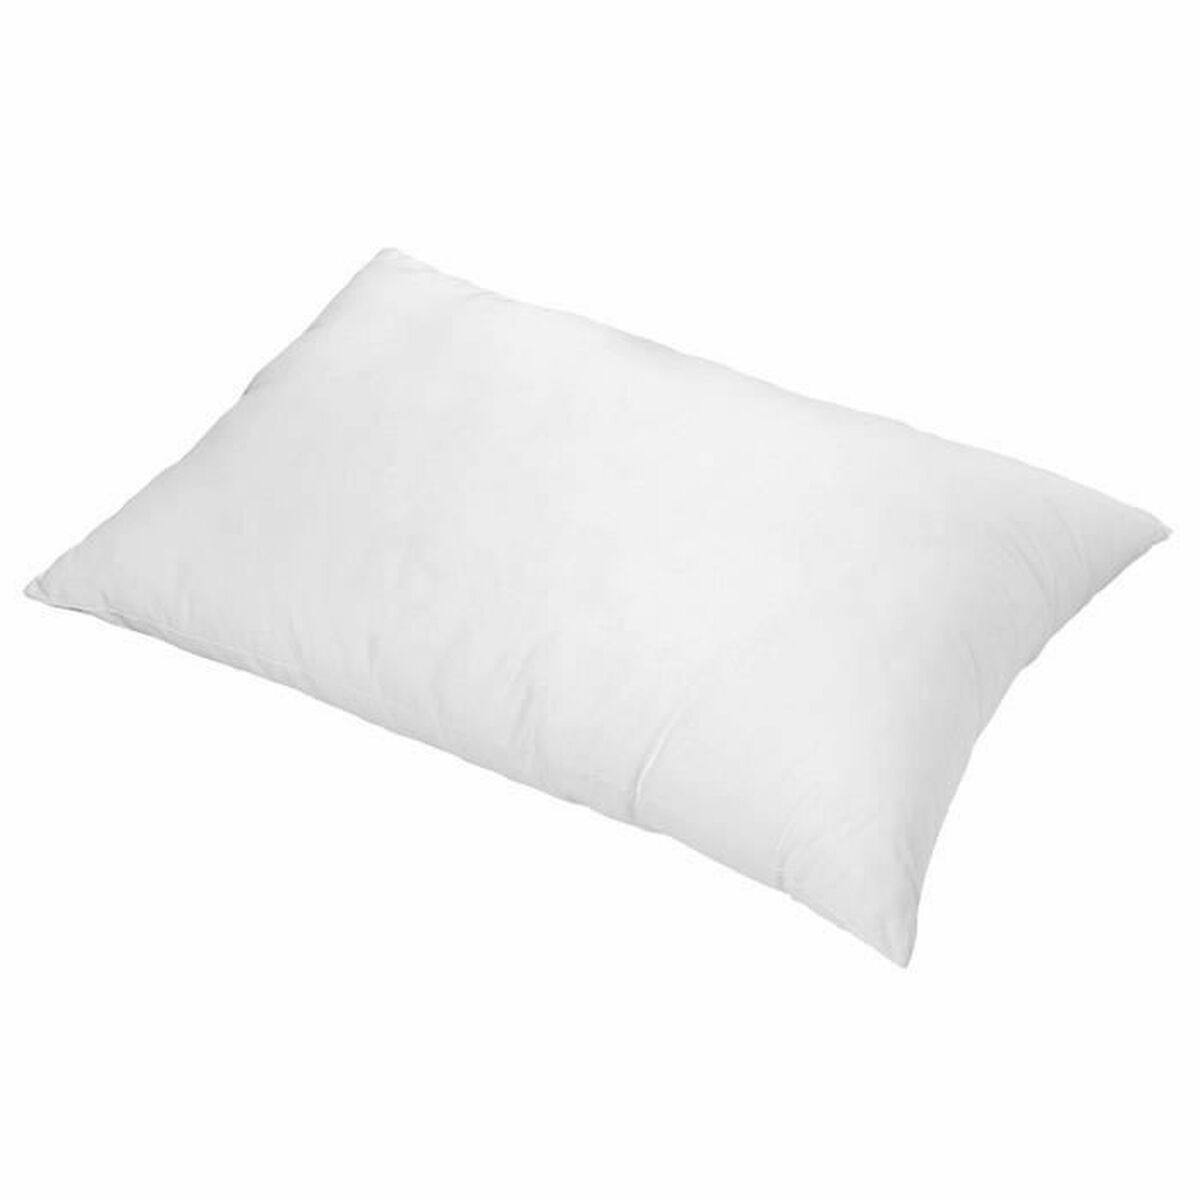 Pillow Toison D'or White 40 x 40 x 10 cm